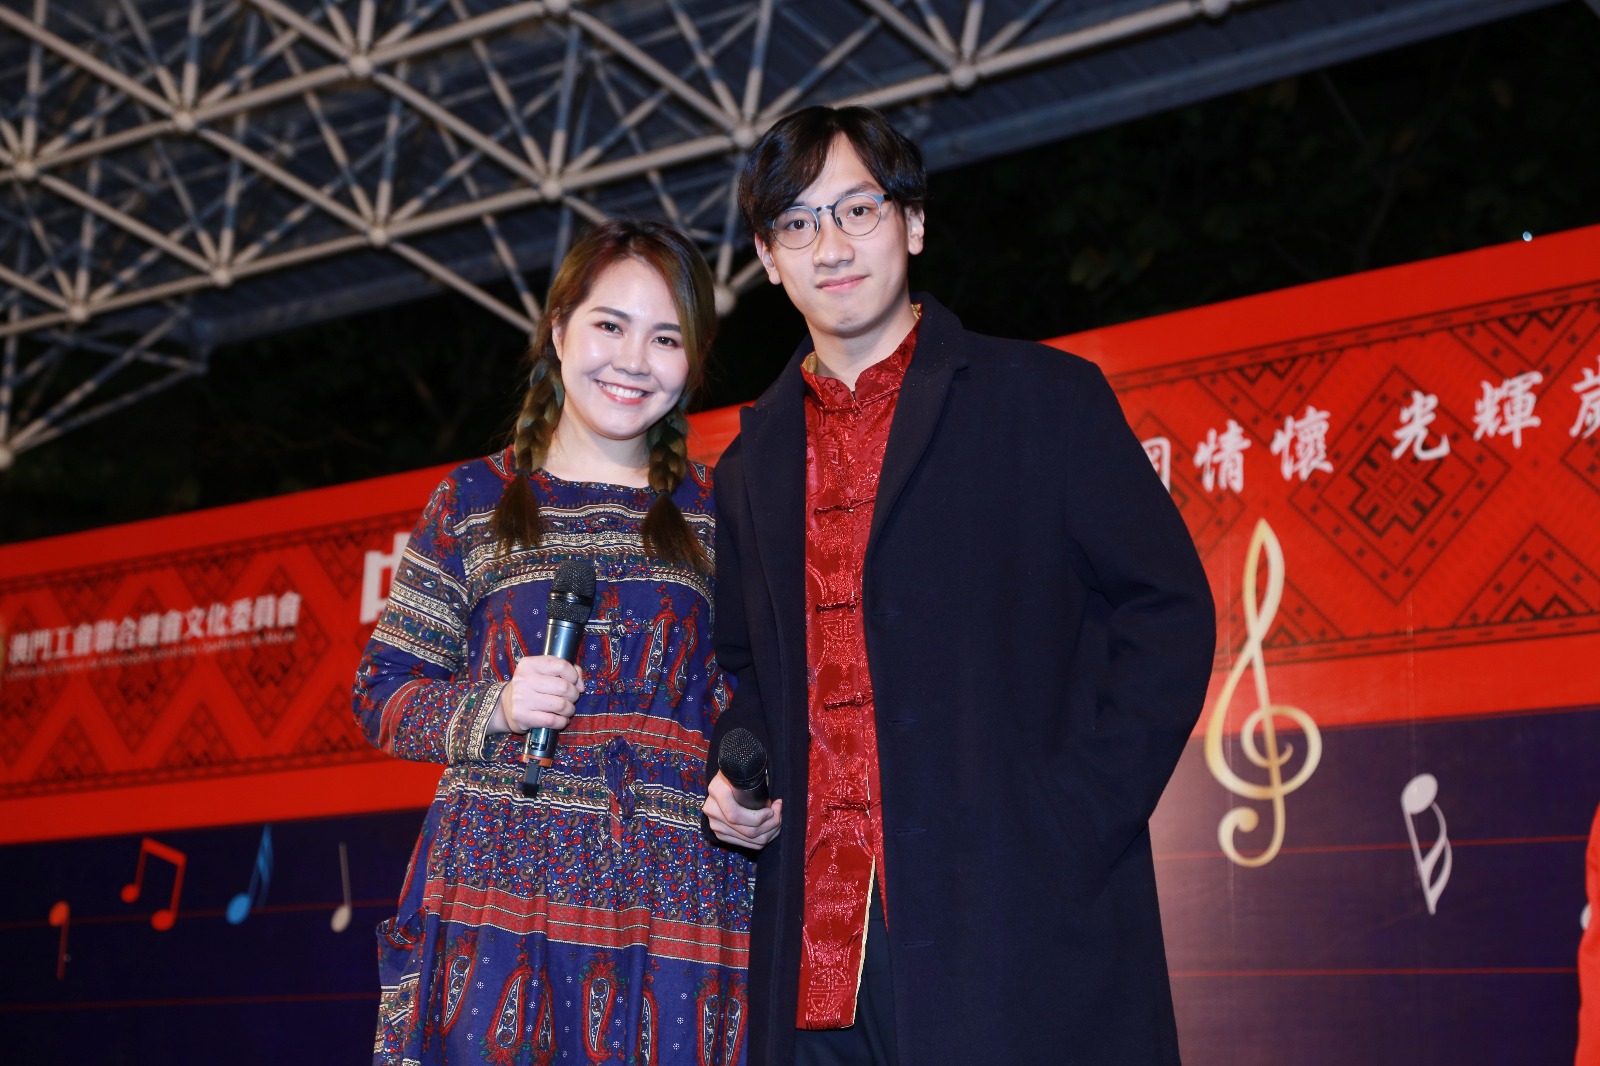 周啓陽 Elvis Chao司儀工作紀錄: 2017中國民族歌曲歌唱大賽決賽